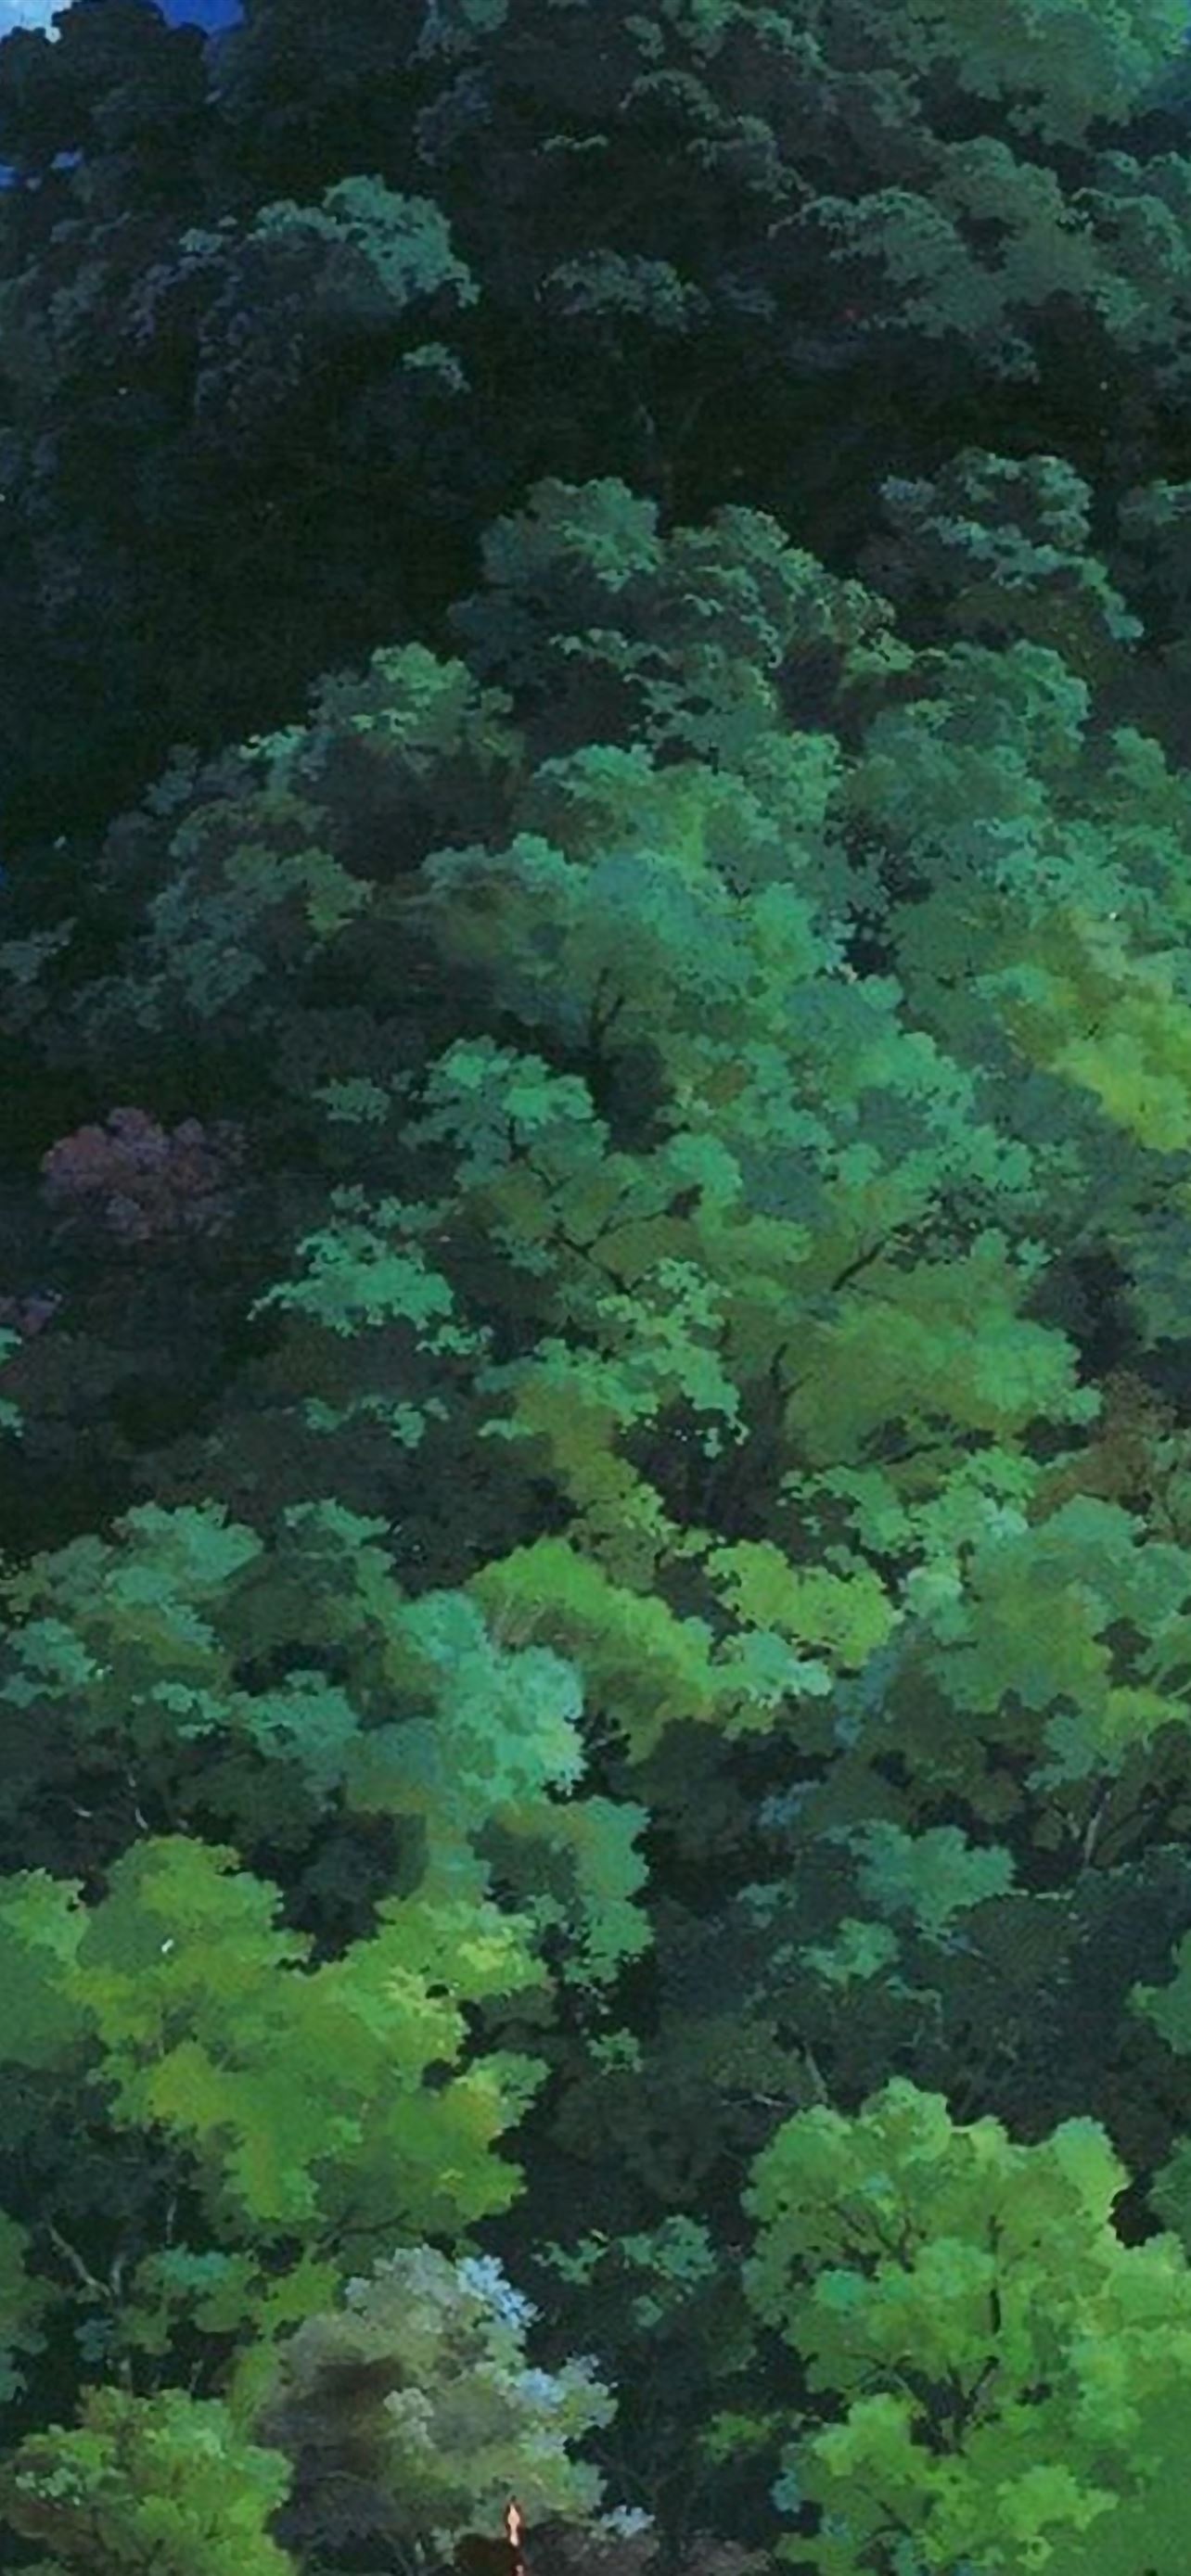 Ghibli Tree: Với bố cục tuyệt đẹp, các bức ảnh Ghibli Tree của chúng tôi sẽ khiến cho bạn chìm đắm trong vẻ đẹp của những cây cổ thụ trong rừng sâu kỳ bí. Nếu bạn là fan của Studio Ghibli, hãy không bỏ qua bộ sưu tập của chúng tôi!